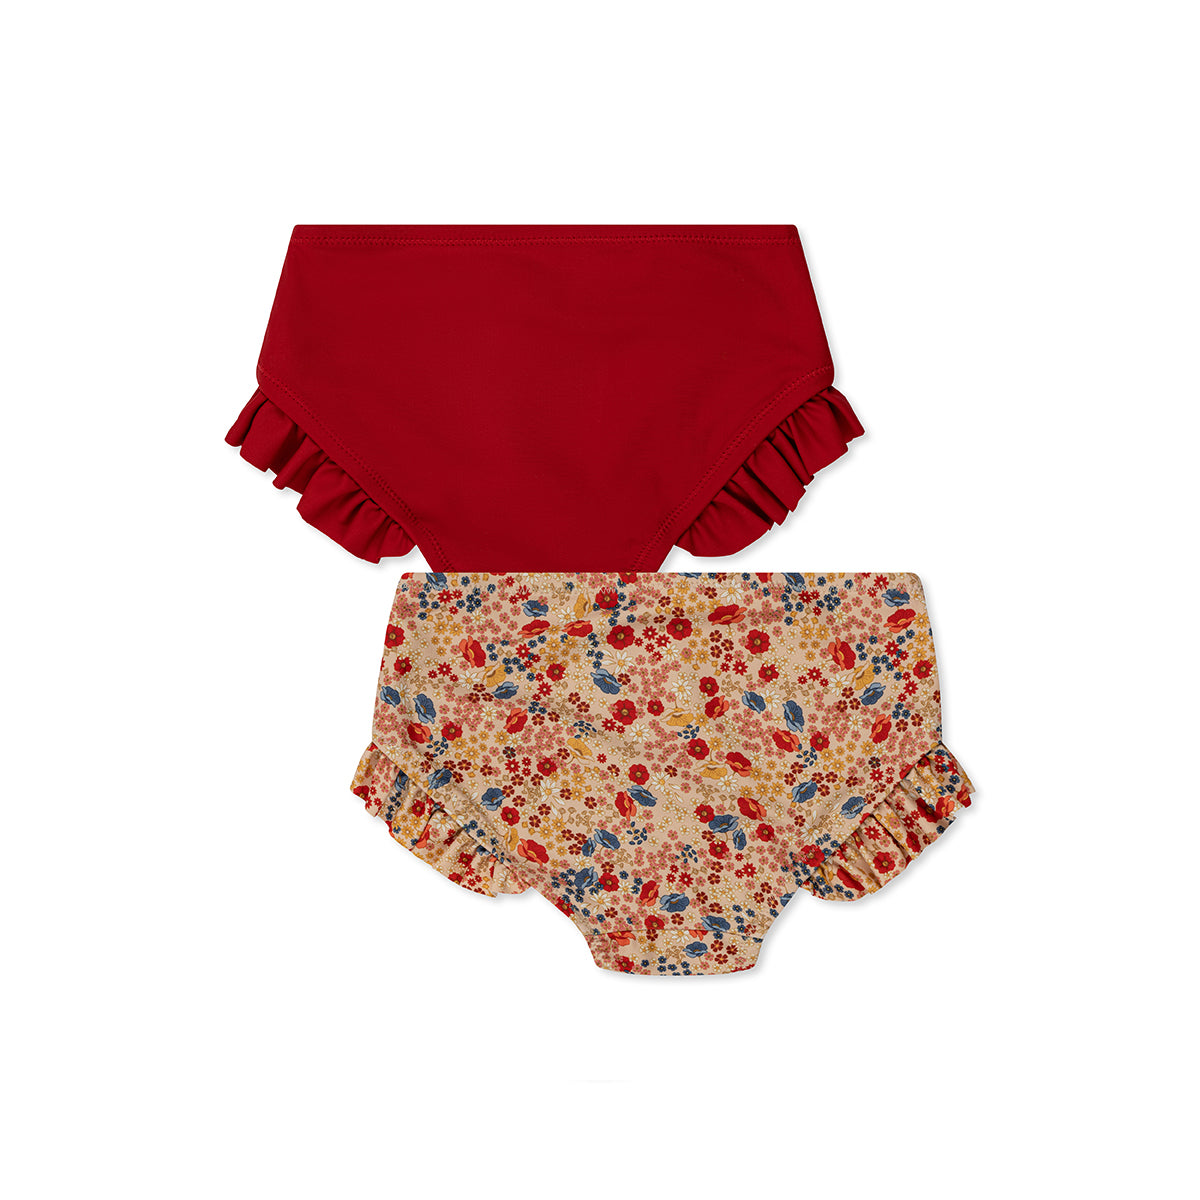 De Konges Slojd 2-pack manuca bikinibroekjes villetta/barbados cherry is perfect voor zomerse dagen. Deze zwembroekjes voor kinderen hebben leuke franjes. Zwembroekjes in rood en bloemetjesprint. VanZus.